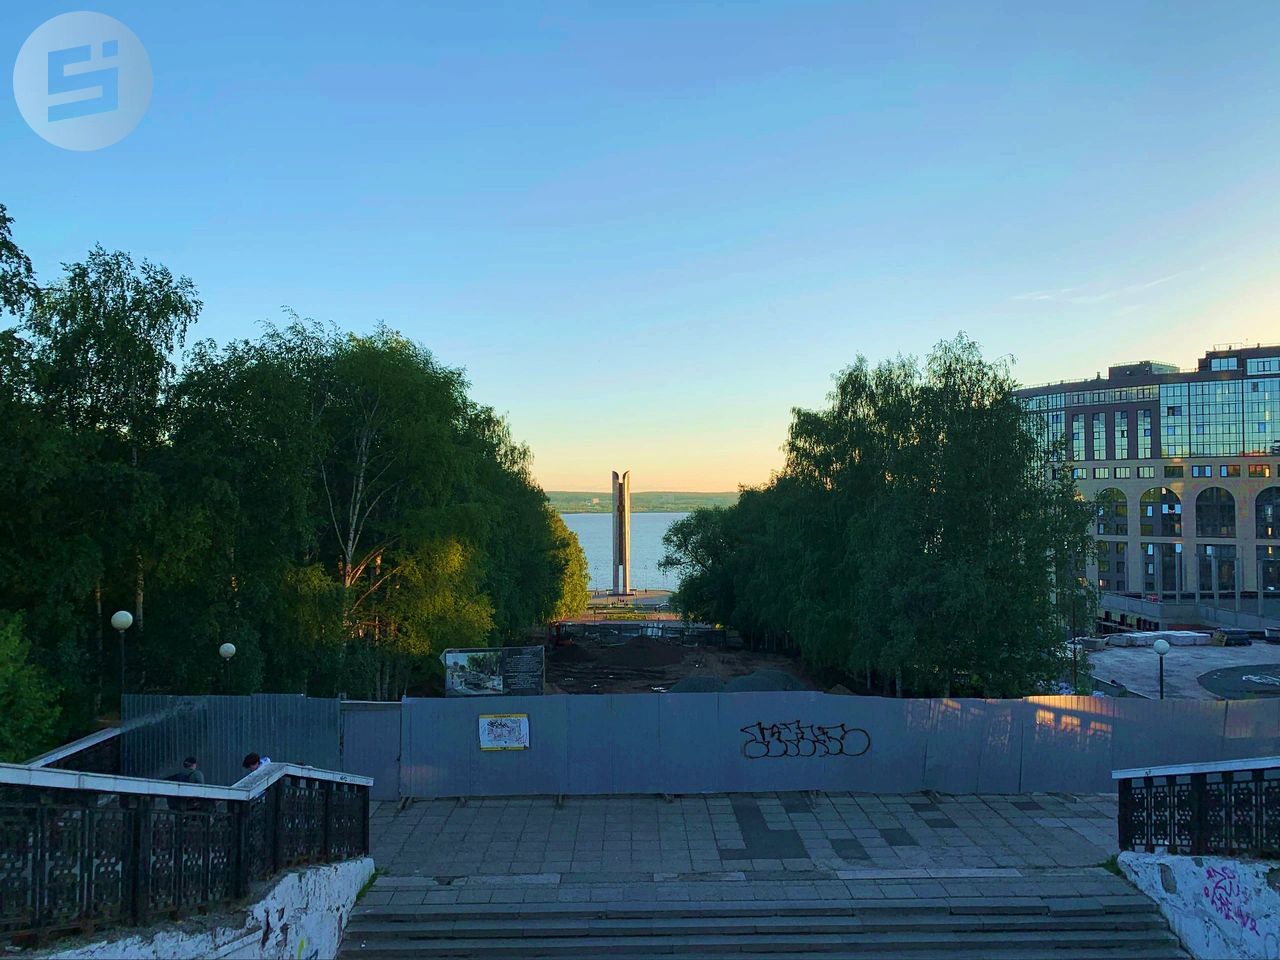 

Реконструкцию эспланады на Центральной площади Ижевска завершат до 25 августа

